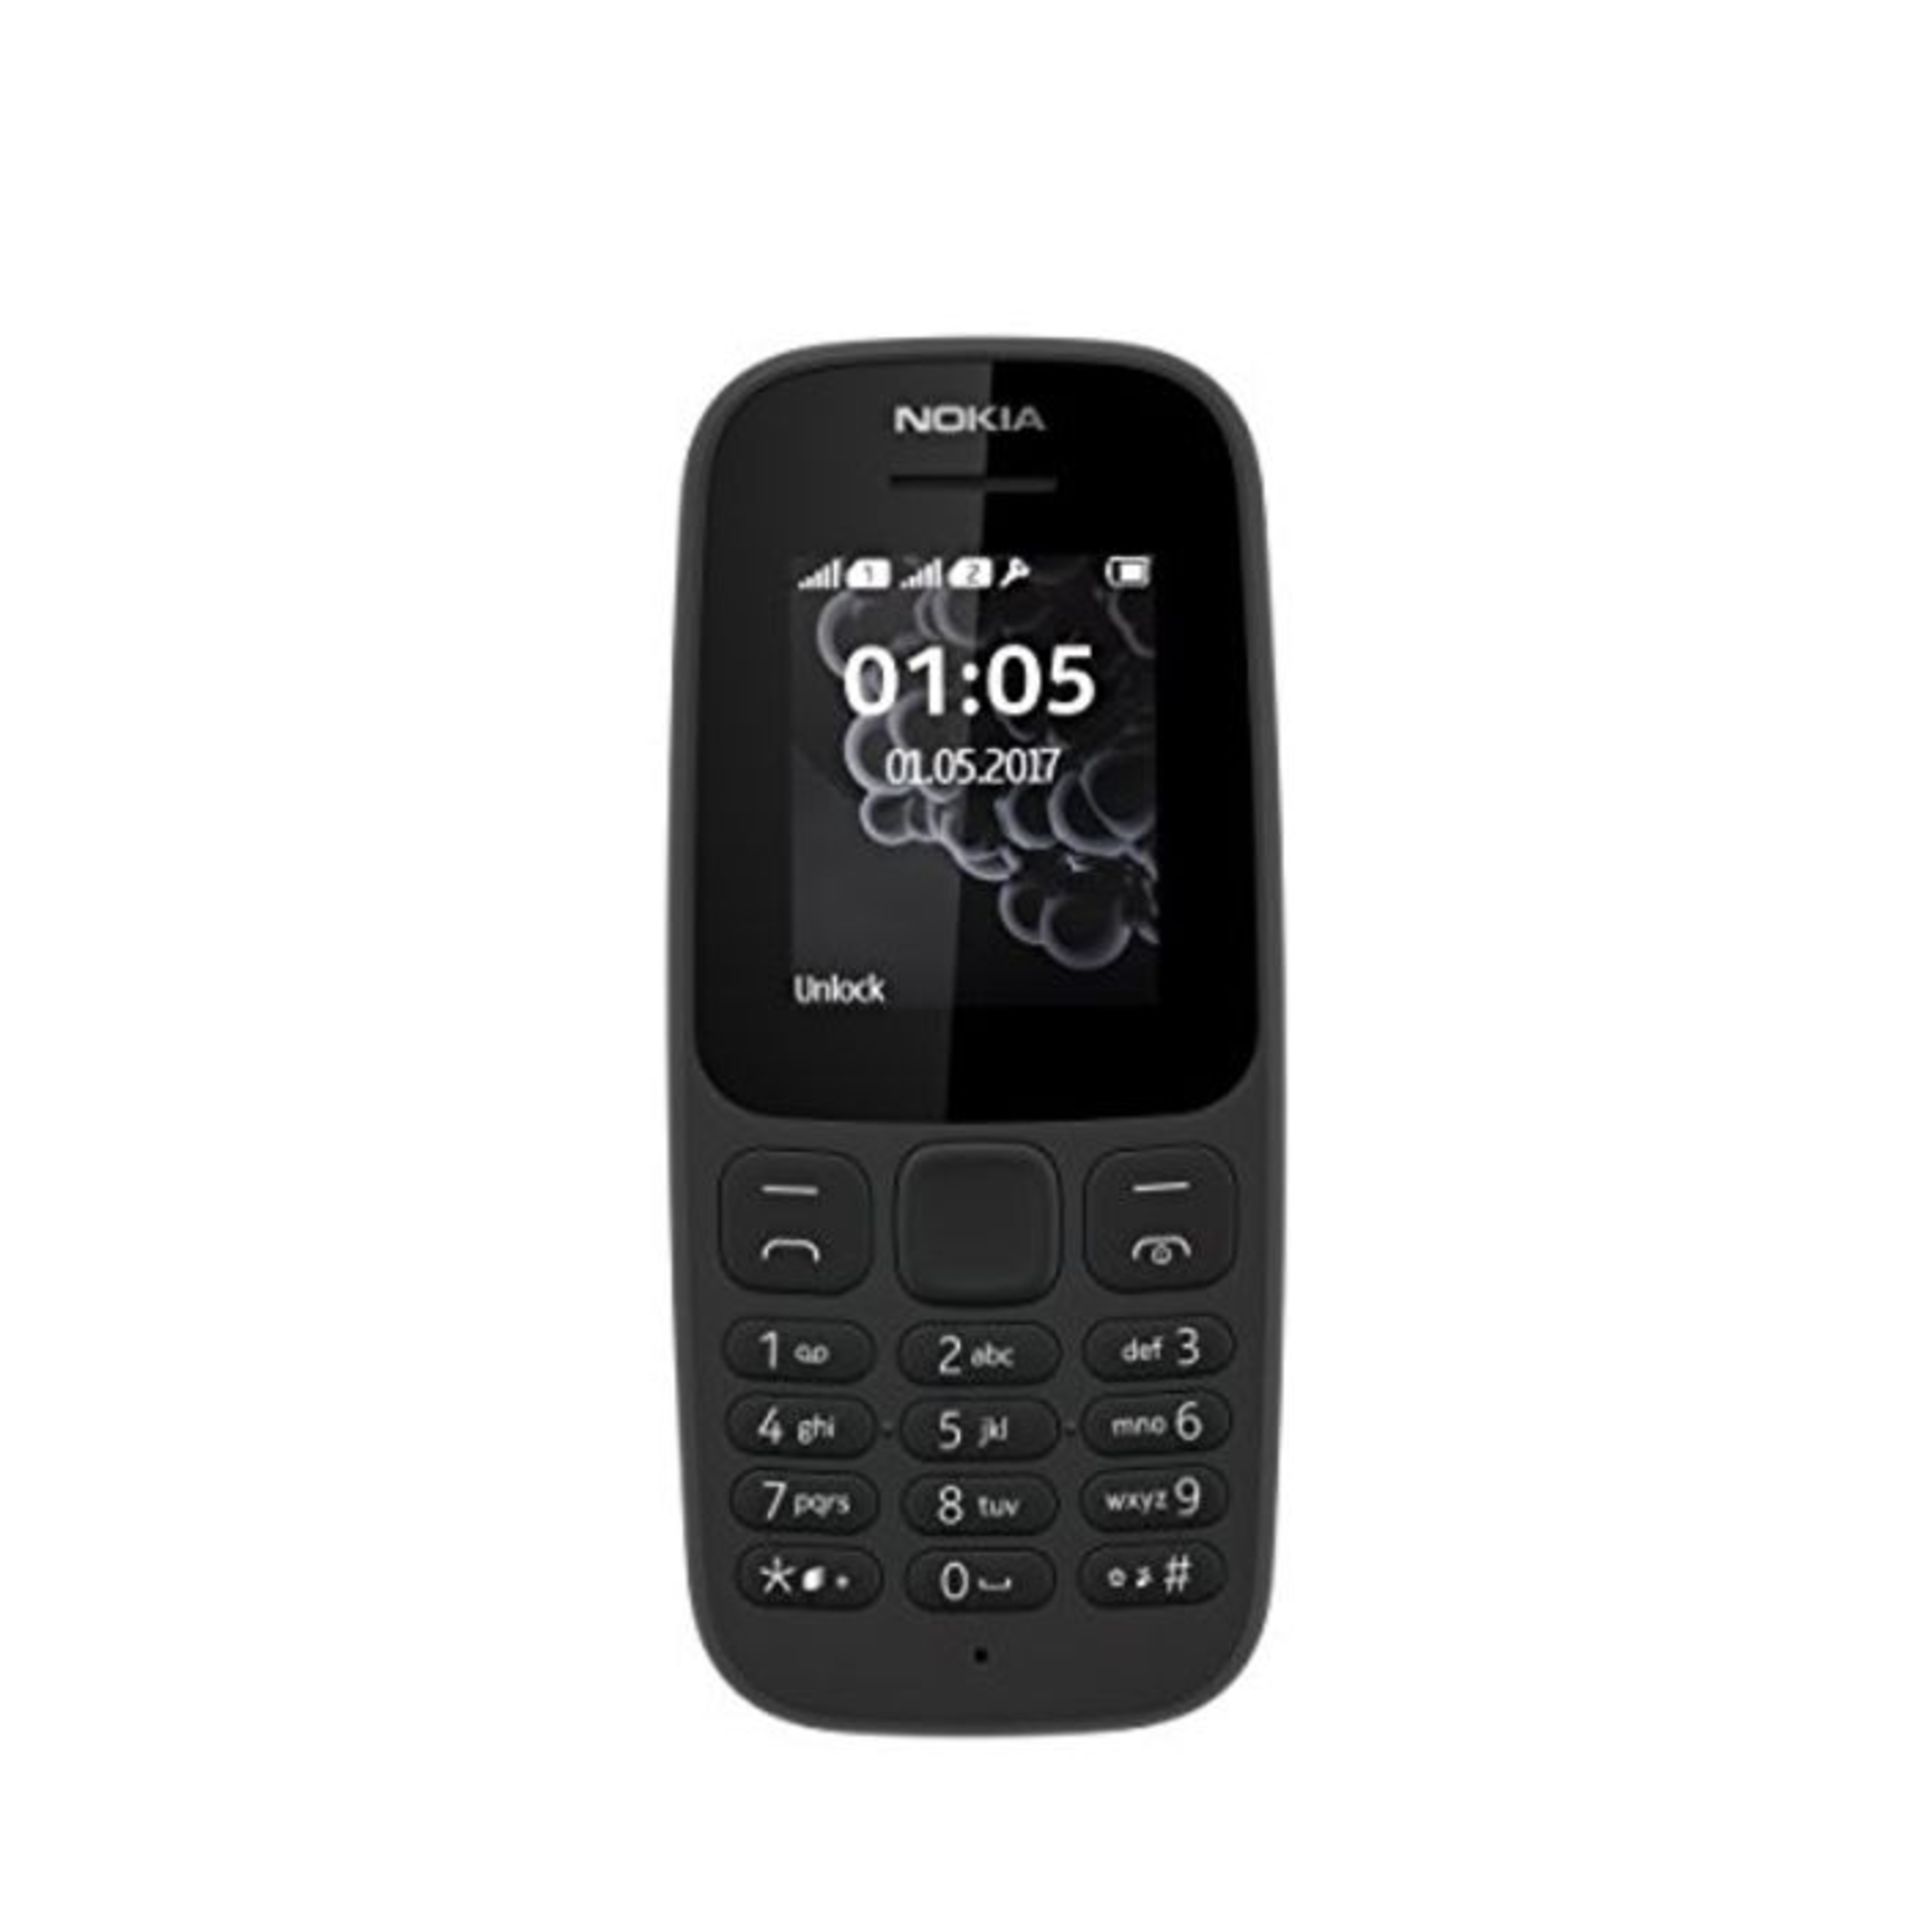 Nokia 105 2017 black Dual SIM unlocked